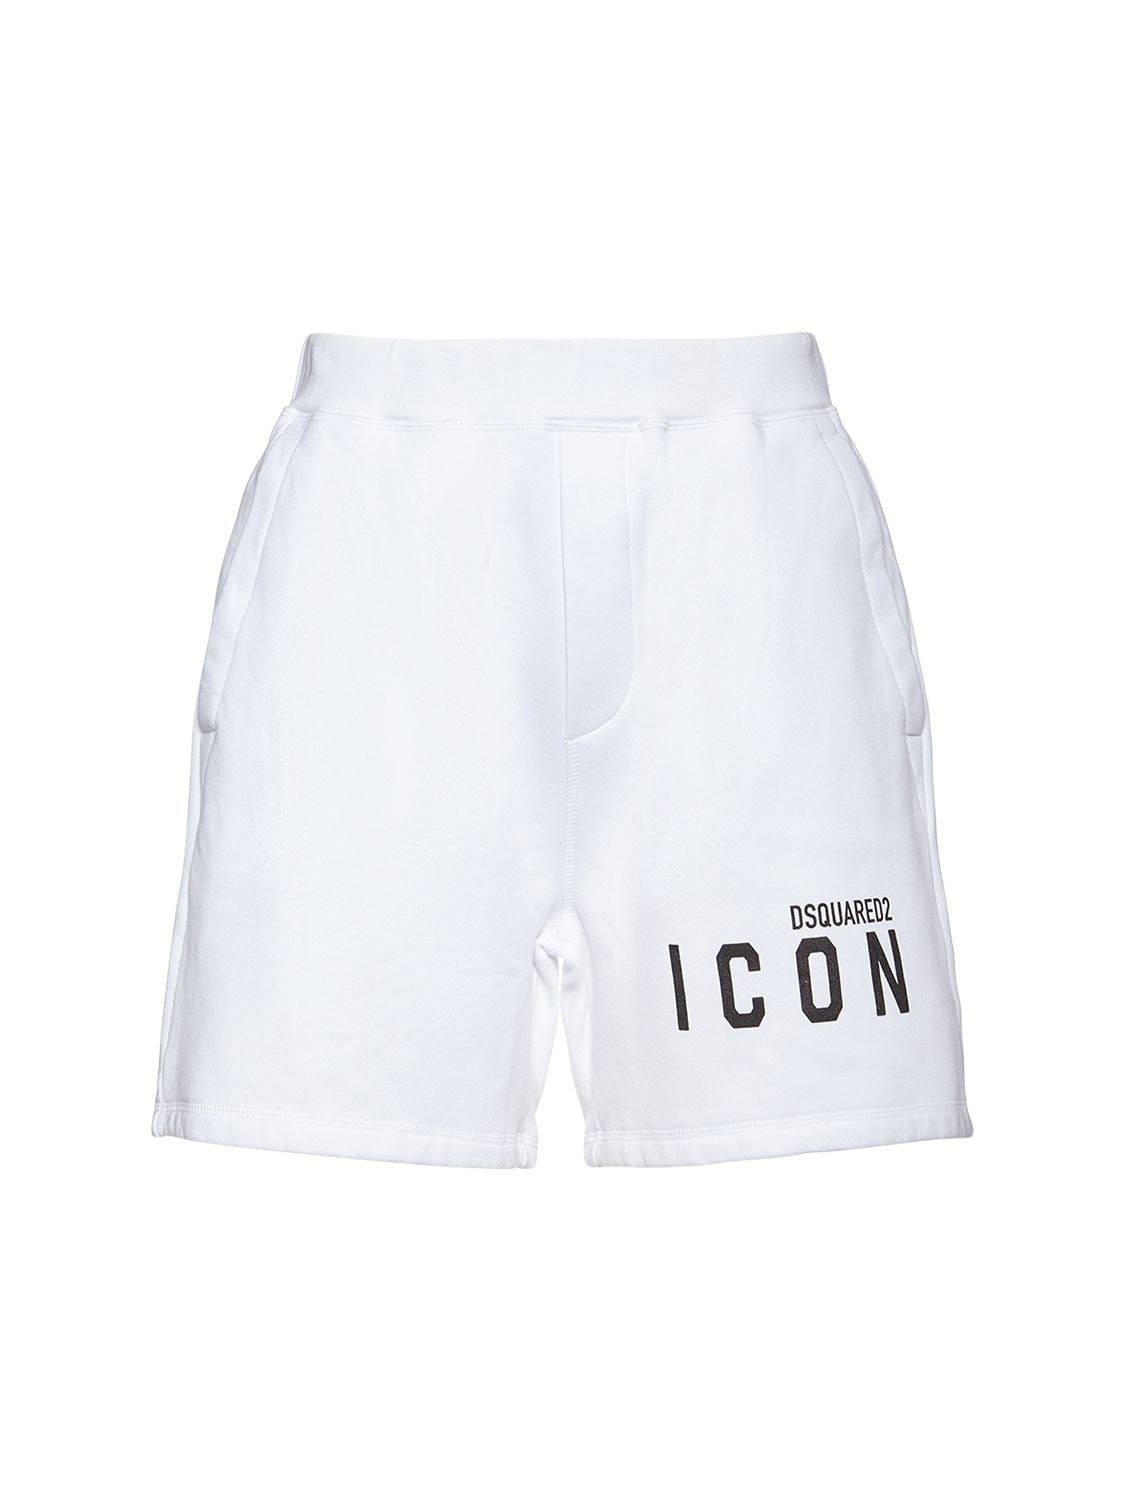 Short En Jersey De Coton Icon Coton DSquared² pour homme en coloris Blanc 1 % de réduction Homme Vêtements Articles de sport et dentraînement Shorts de sport 